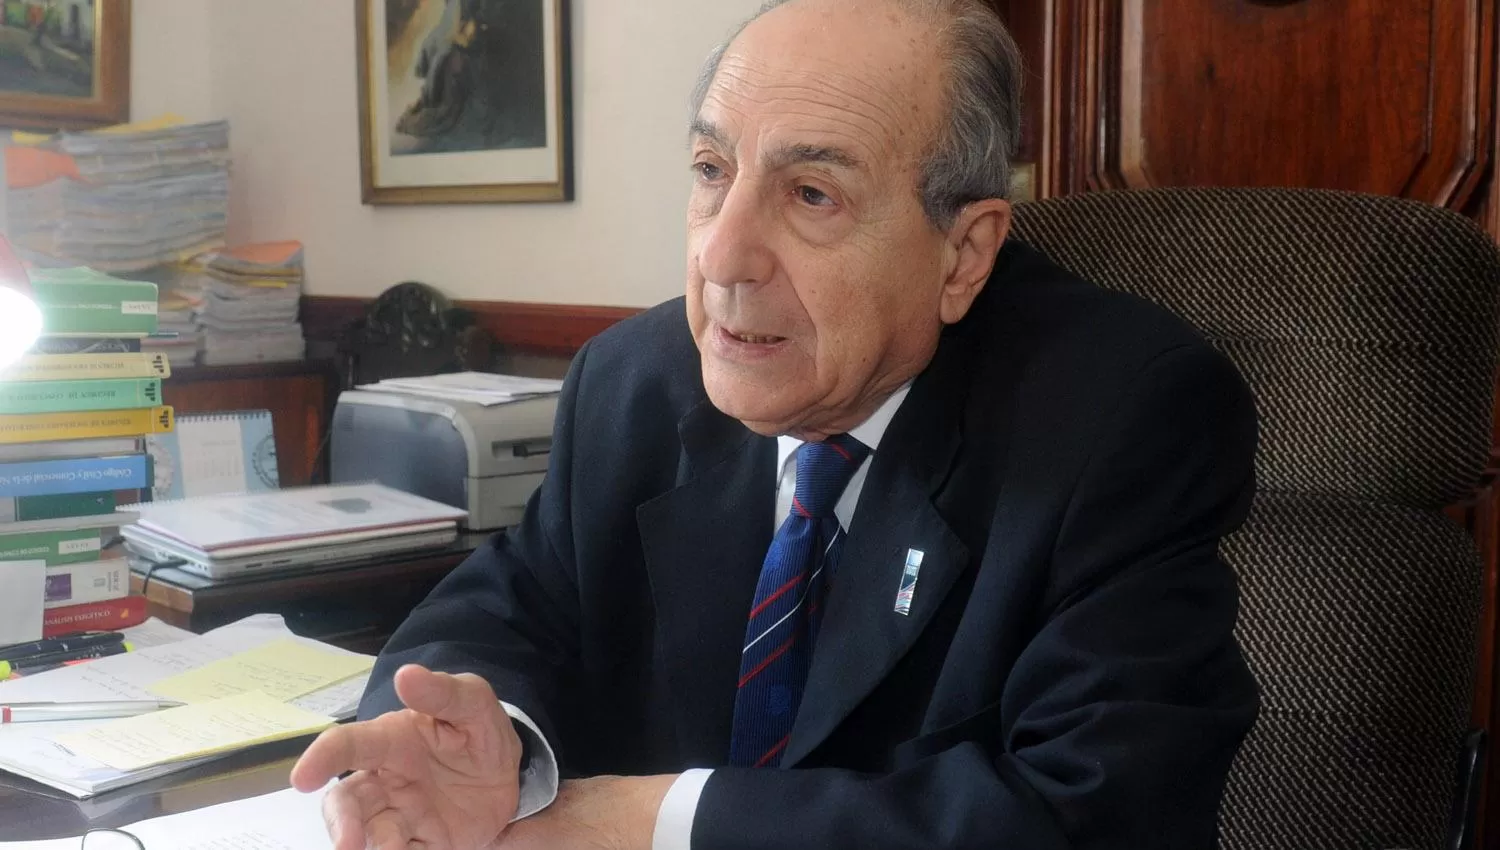 Murió Antonio Gandur, vocal de la Corte Suprema de Justicia de Tucumán